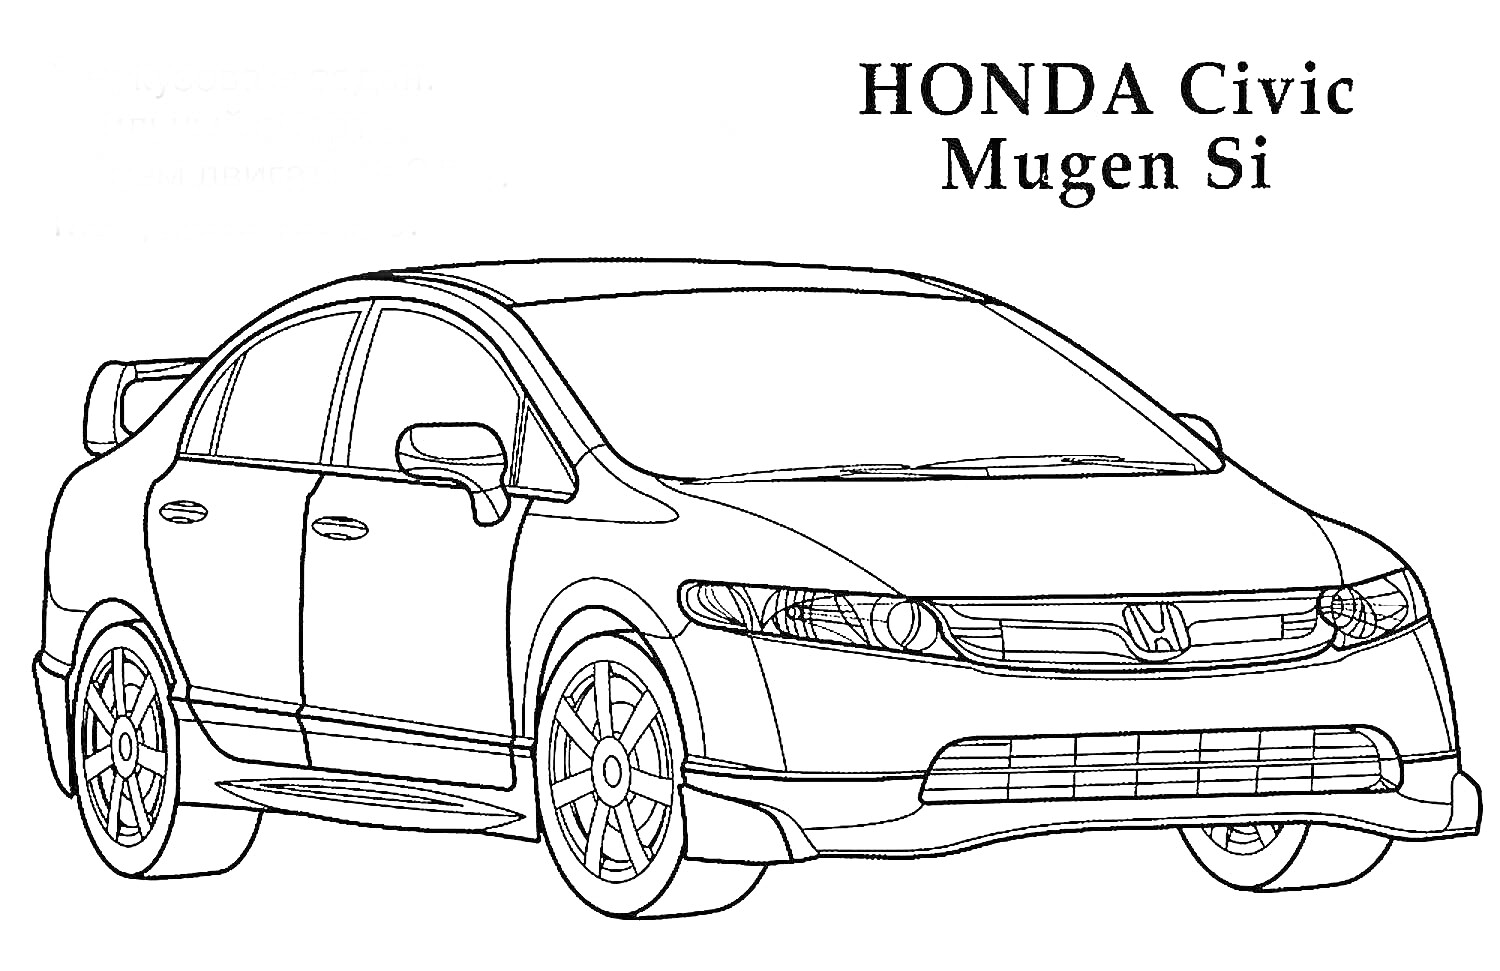 HONDA Civic Mugen Si с передней фарой, боковыми зеркалами, передним бампером, колесами и задним спойлером